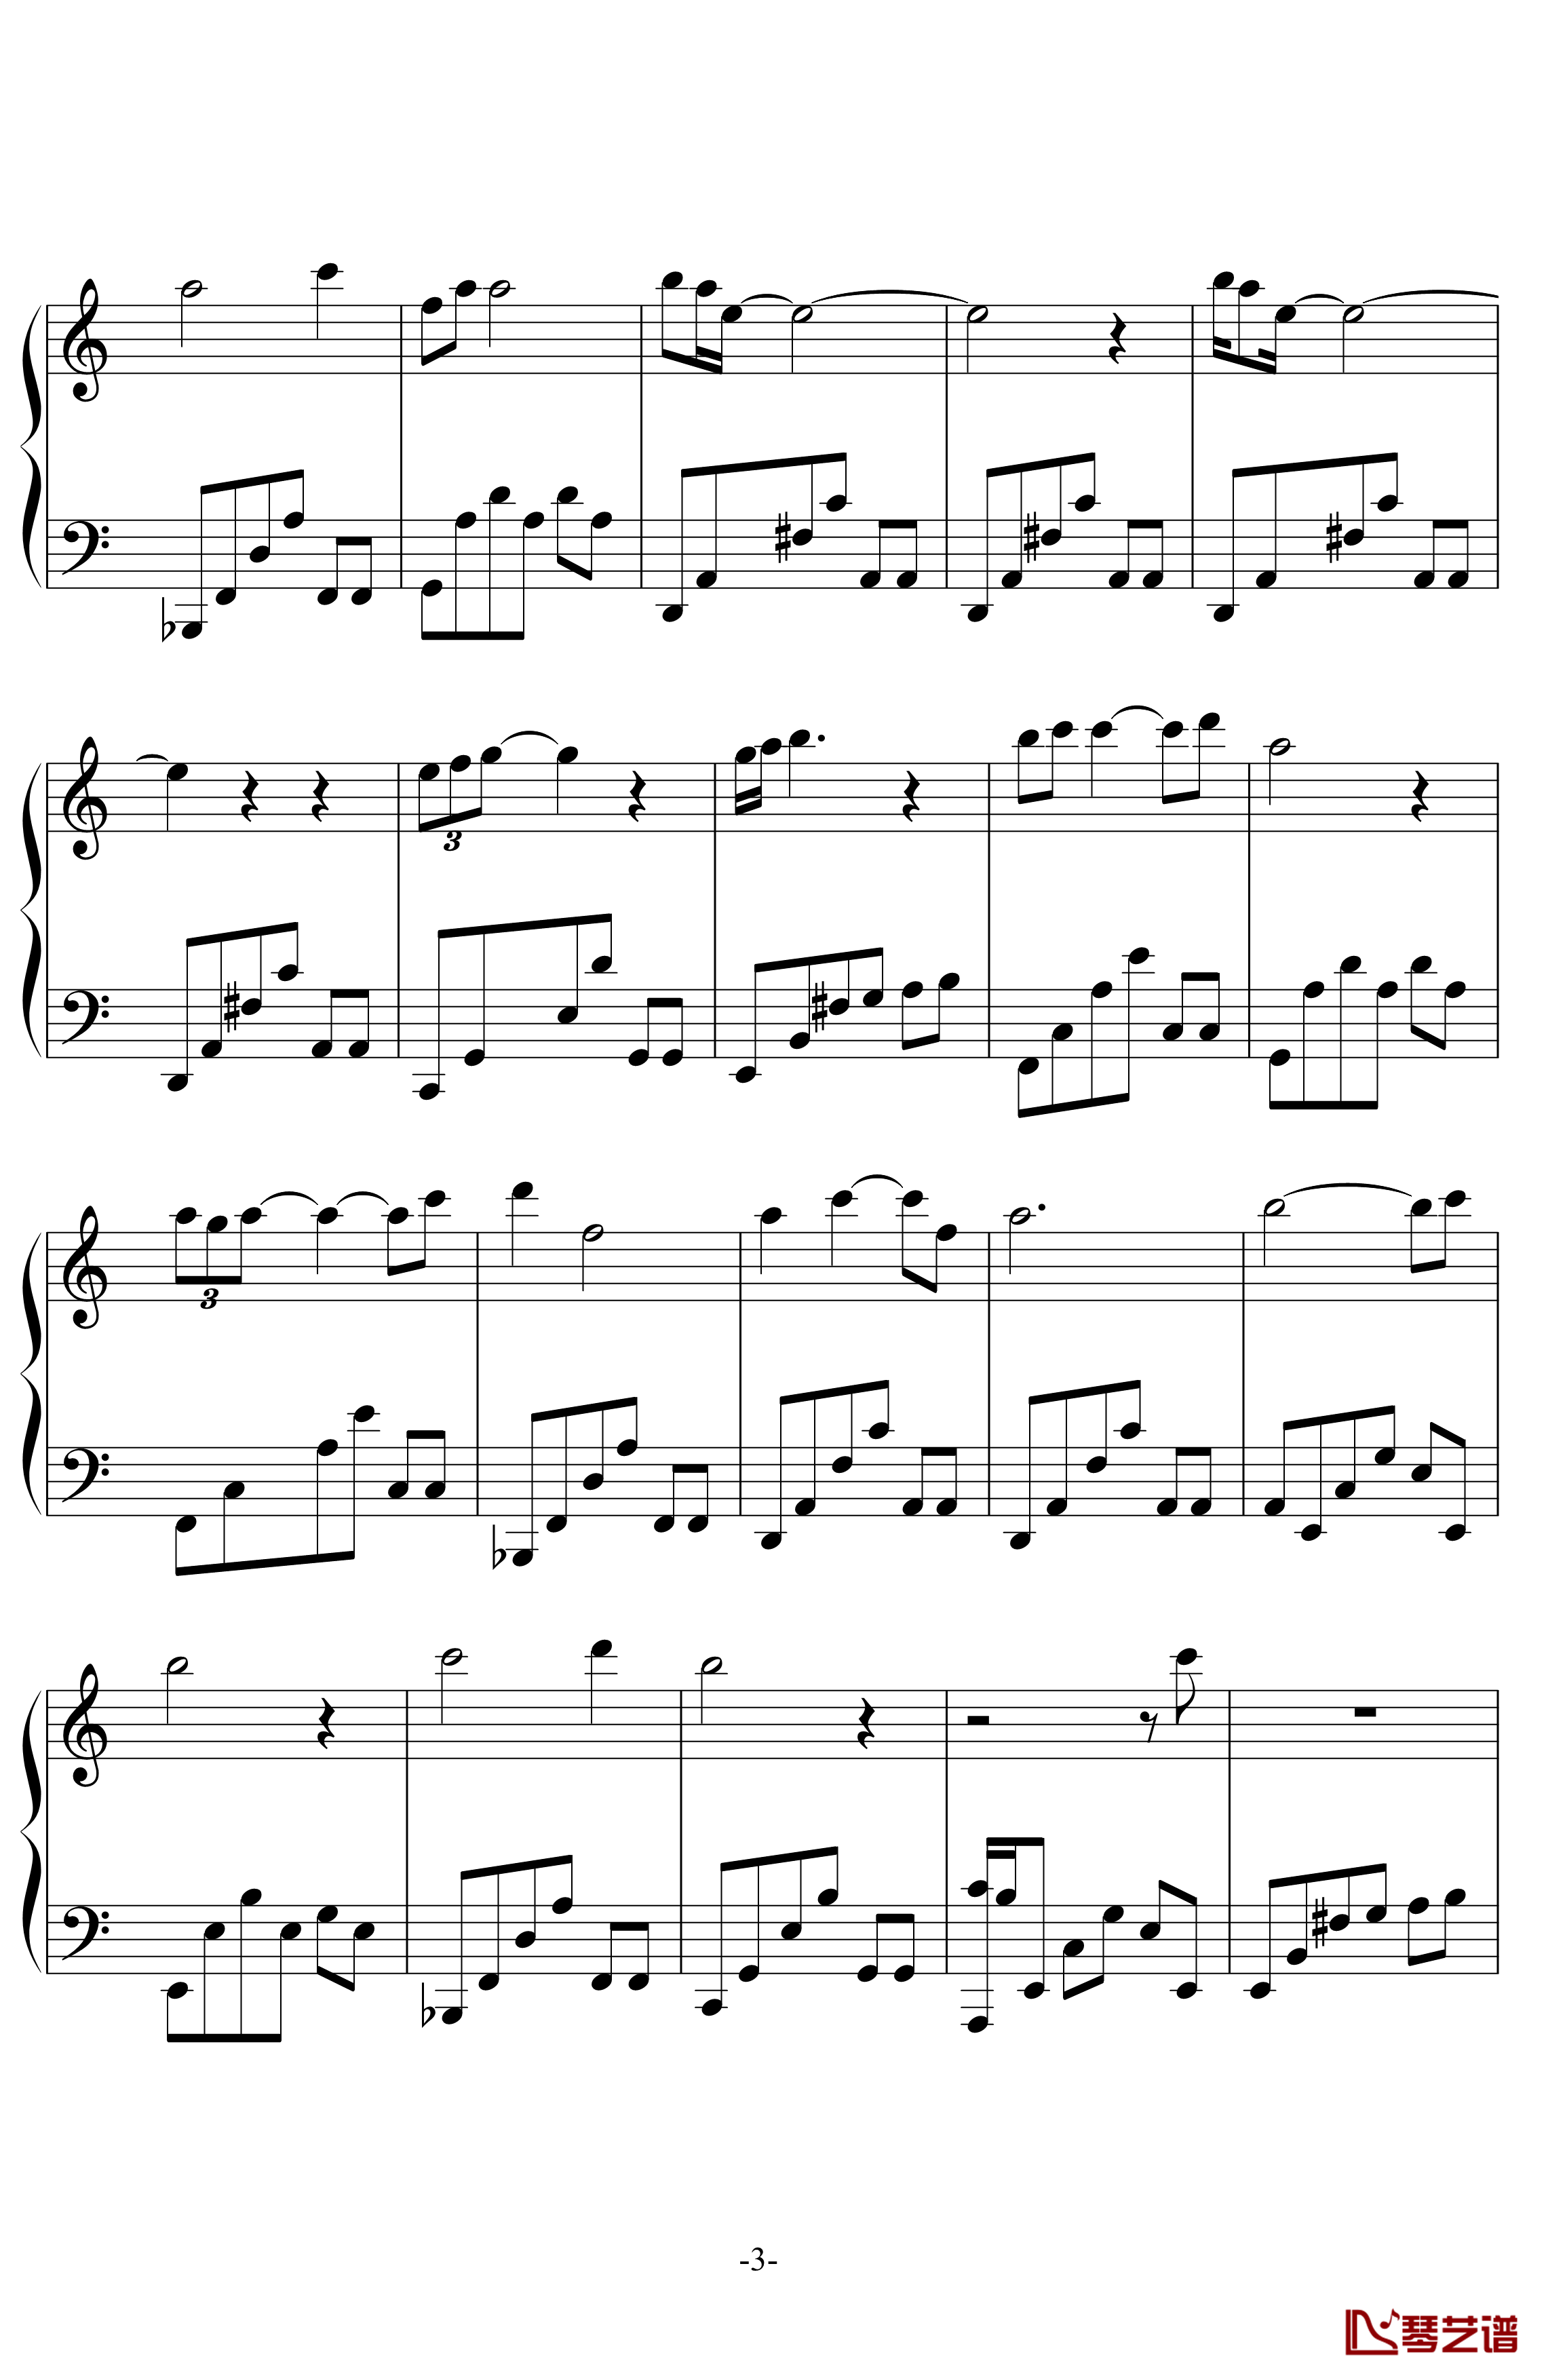 Petals钢琴谱-swenl3